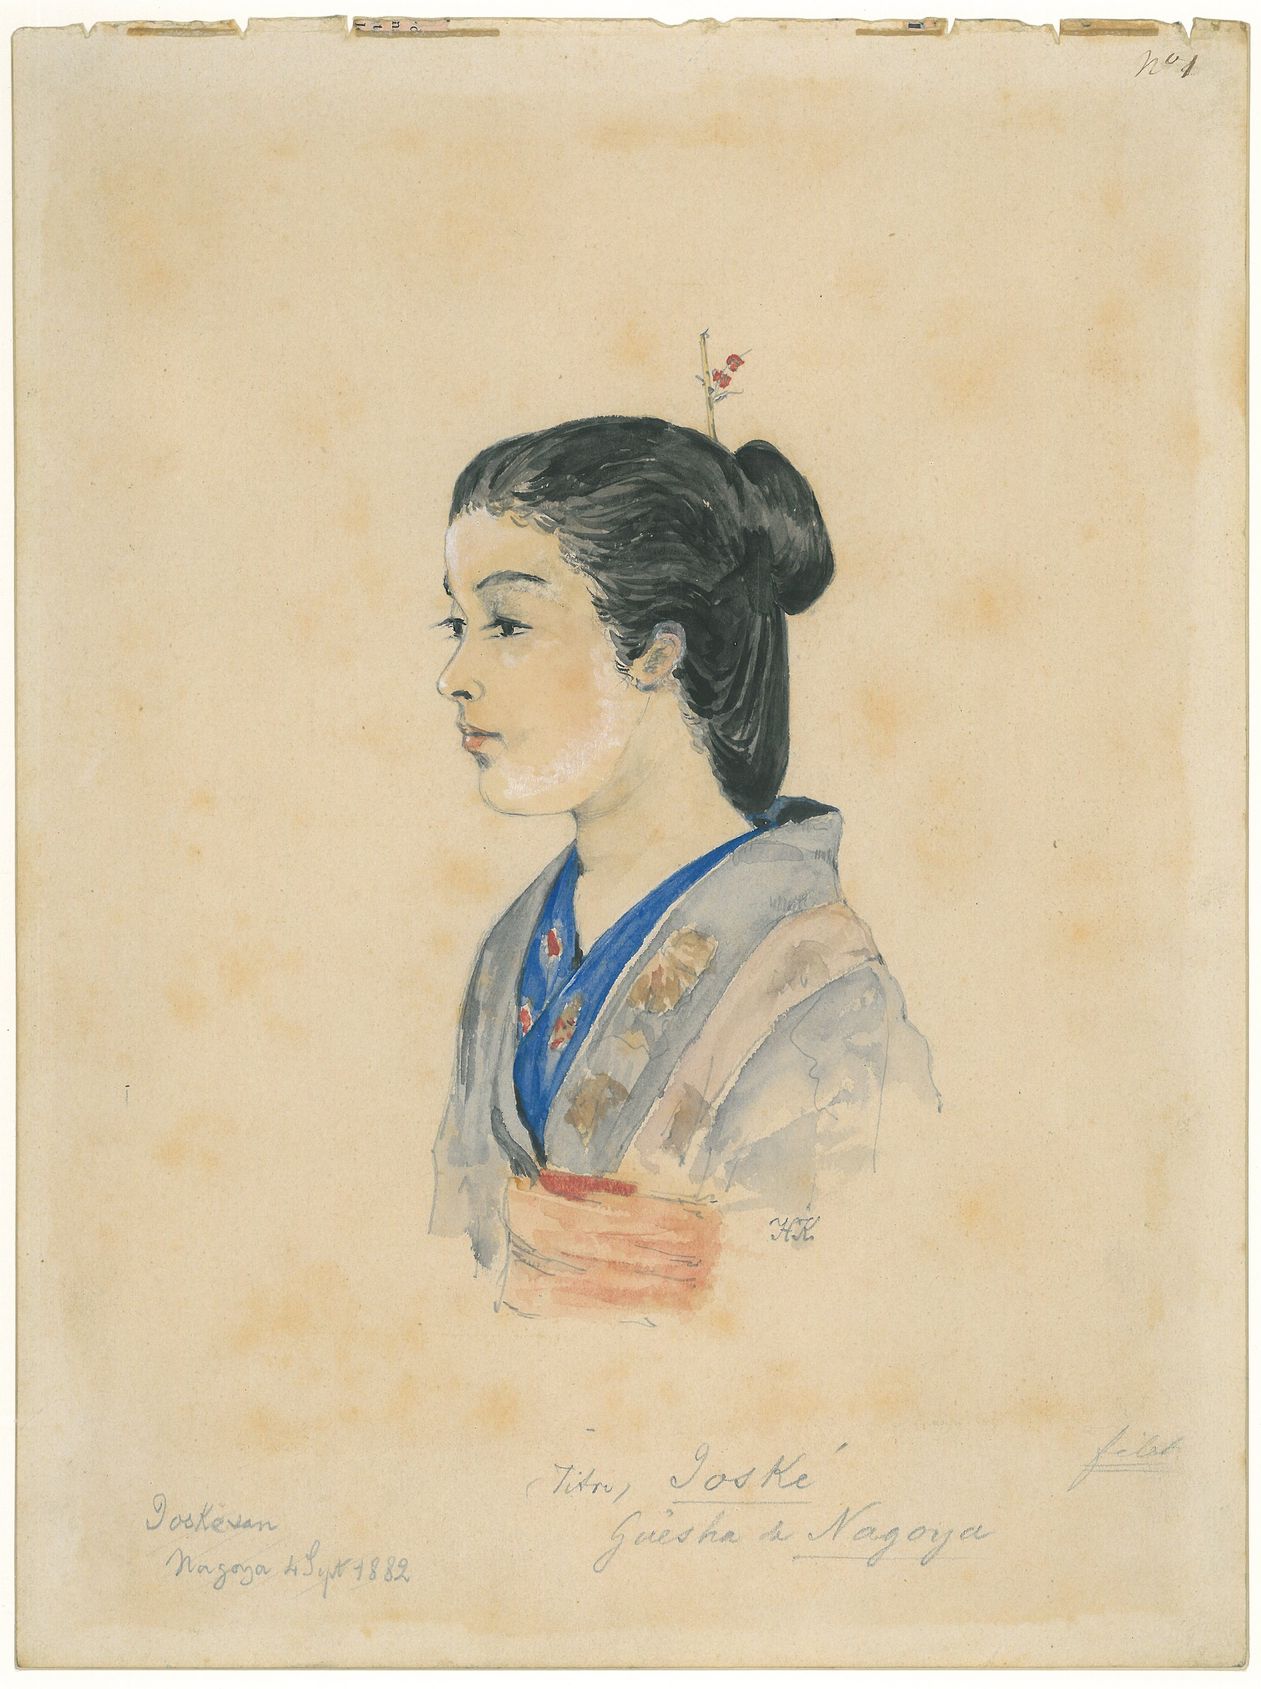 Hugues KRAFFT, Joské, geisha de Nagoya, 4 septembre 1882, aquarelle et crayon graphite, collection SAVR / musée Le Vergeur, 2009.0.343.